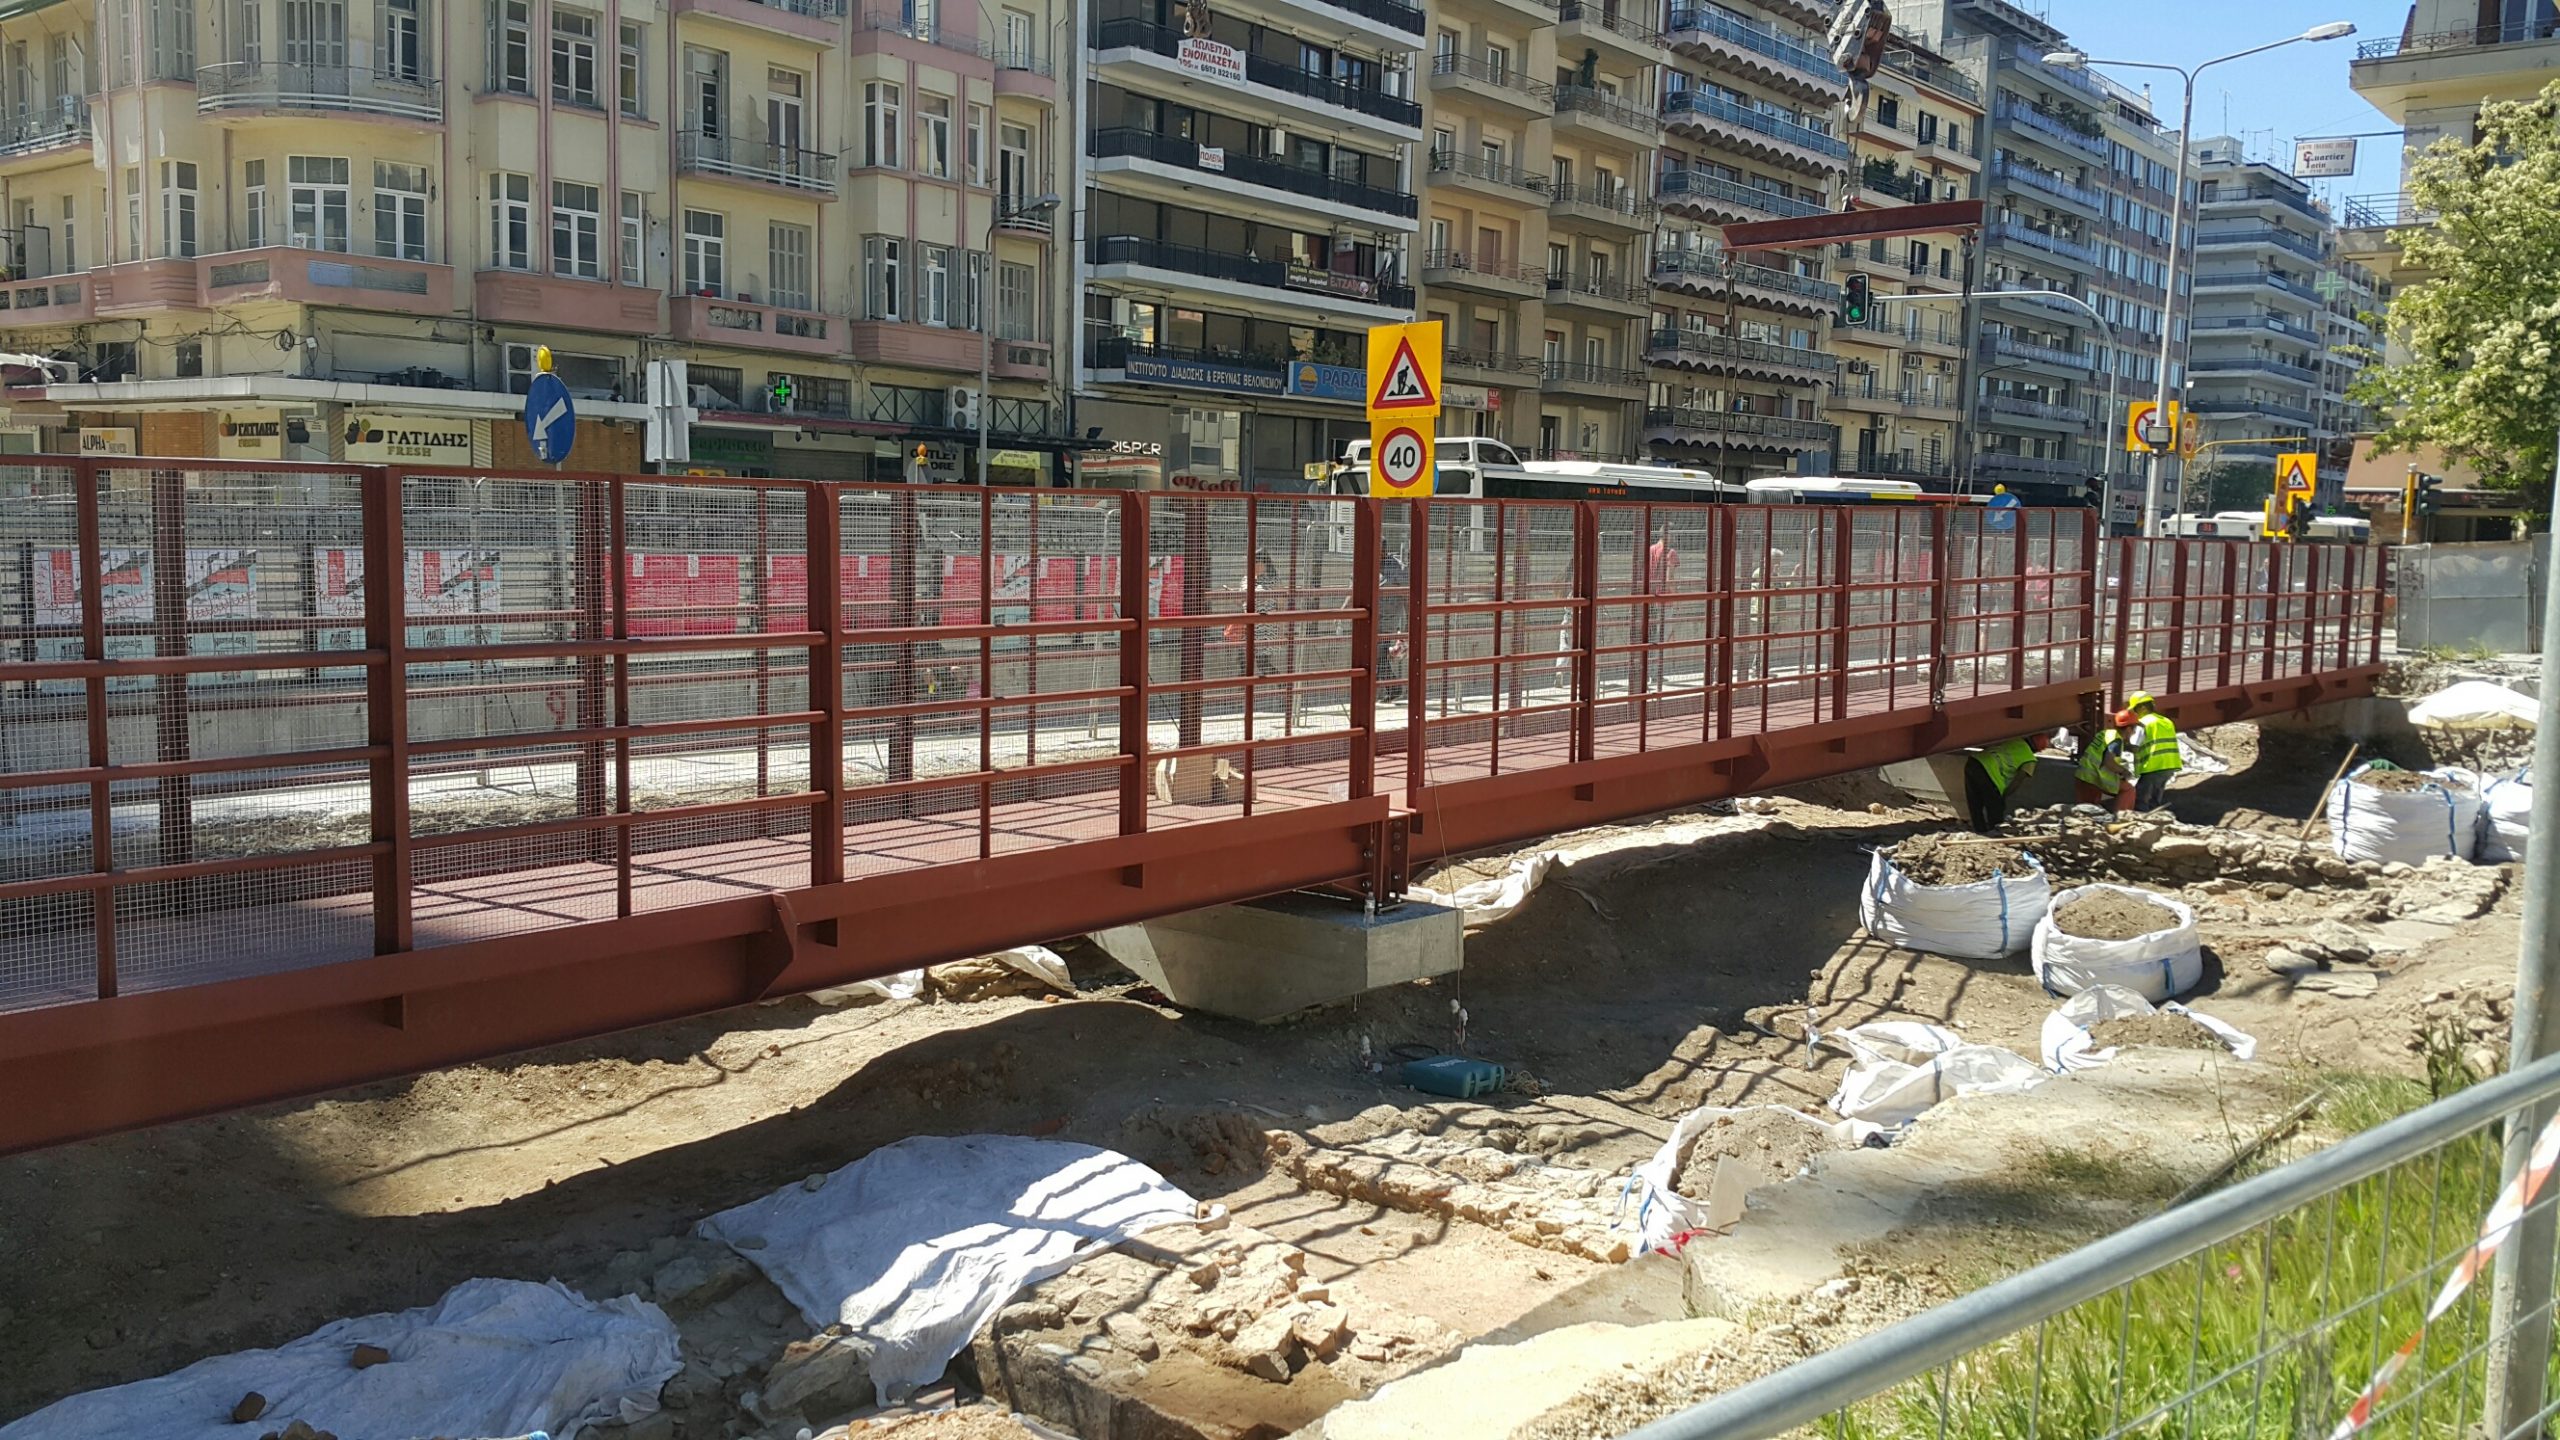 Θεσσαλονίκη: αγωγές για αποζημιώσεις από το δημόσιο ζητούν οι μετρόπληκτοι καταστηματάρχες